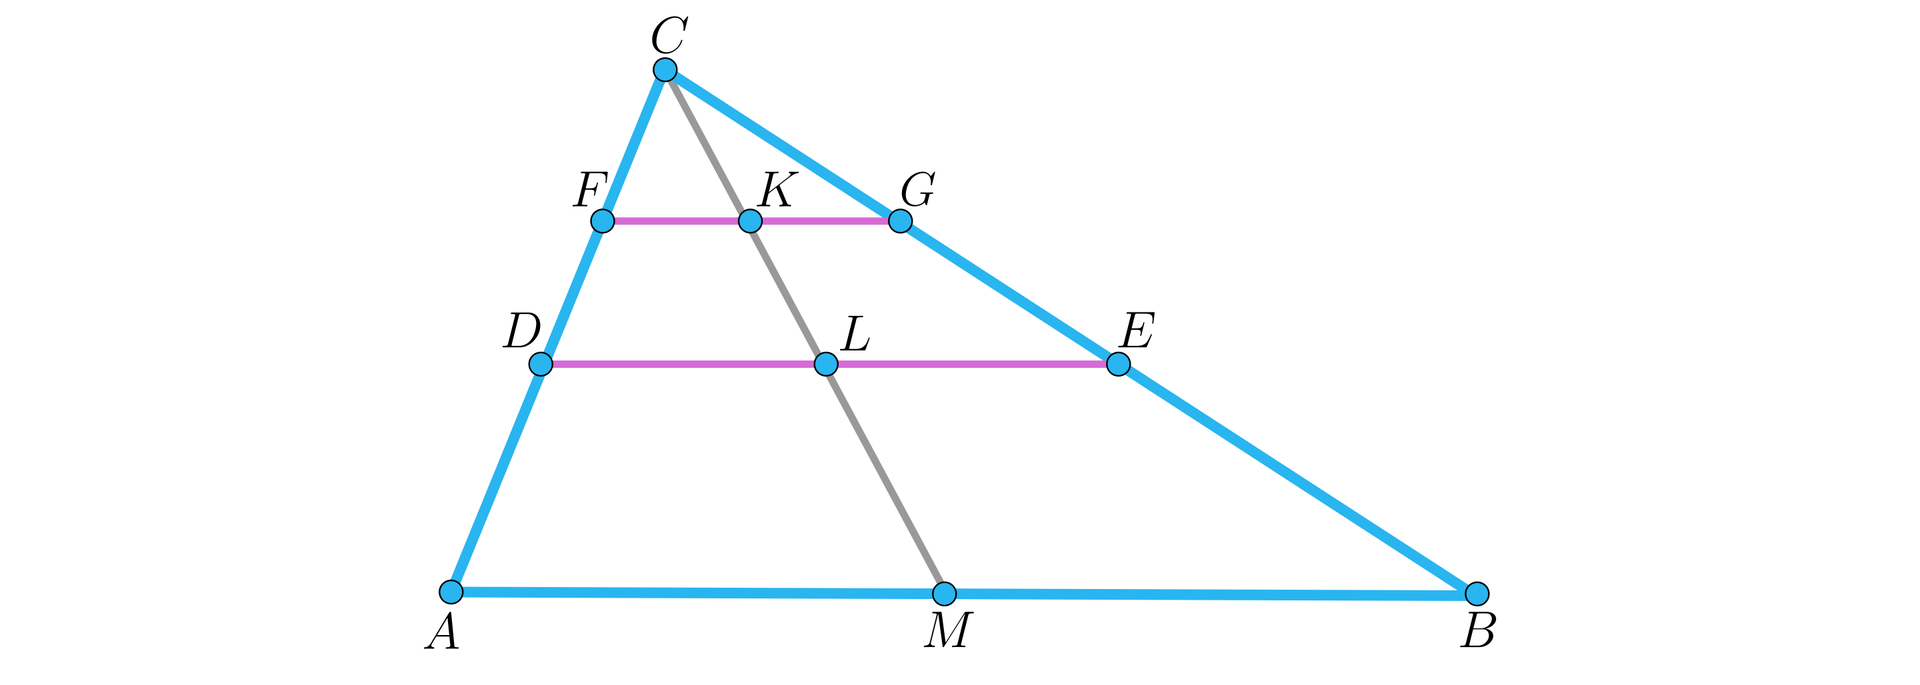 Ilustracja przedstawia trójkąt A B C o poziomej podstawie A B. Na lewym ramieniu trójkąta zaznaczono punkty D oraz F. Na prawym ramieniu B C zaznaczono punkty E oraz G. Punkty D oraz E połączono w poziomy odcinek, a także punkty F oraz G połączono w poziomy odcinek leżący nad odcinkiem D E. Z górnego wierzchołka trójkąta C poprowadzono ukośny odcinek do punktu M, który leży na podstawie A B.